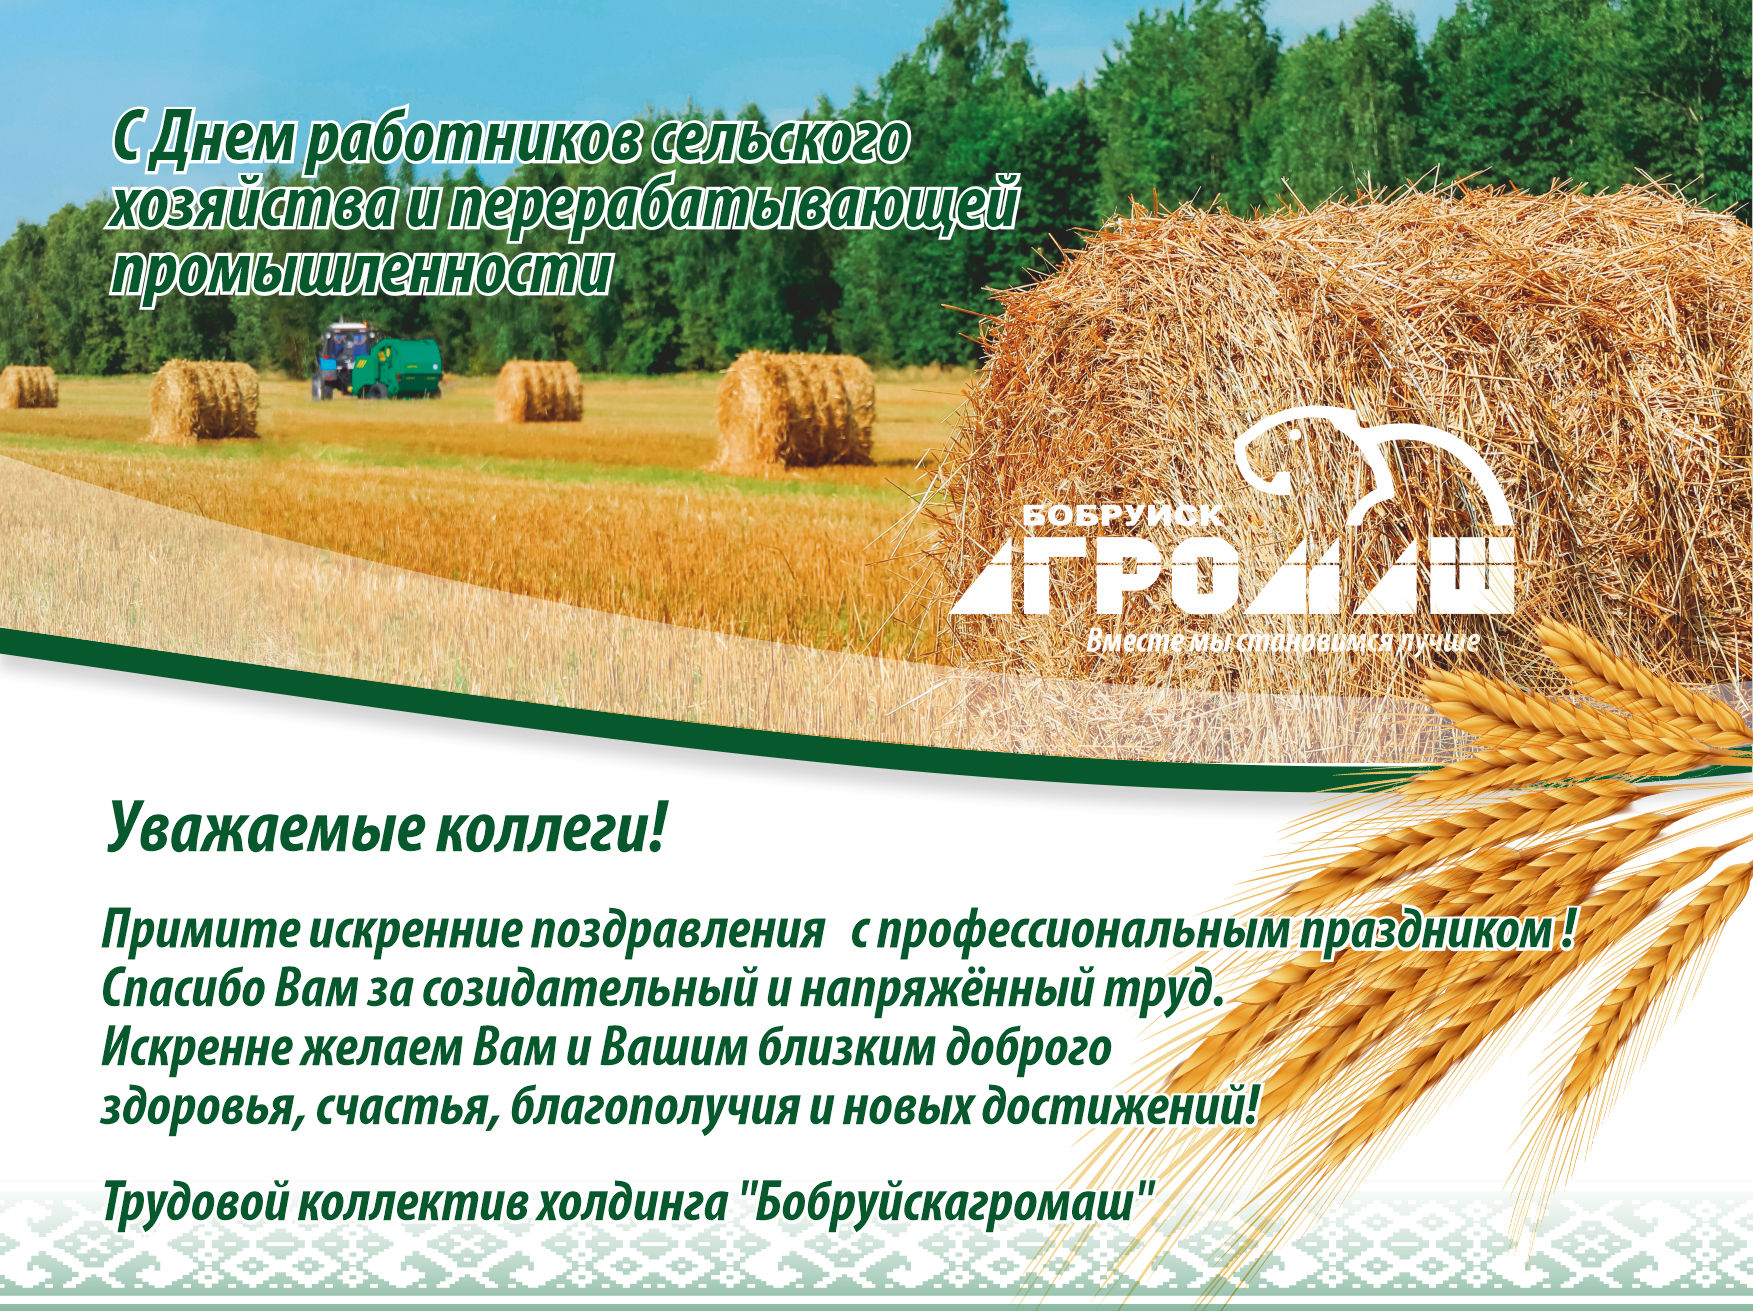 Поздравление с Днём работников сельского хозяйства и перерабатывающей промышленности